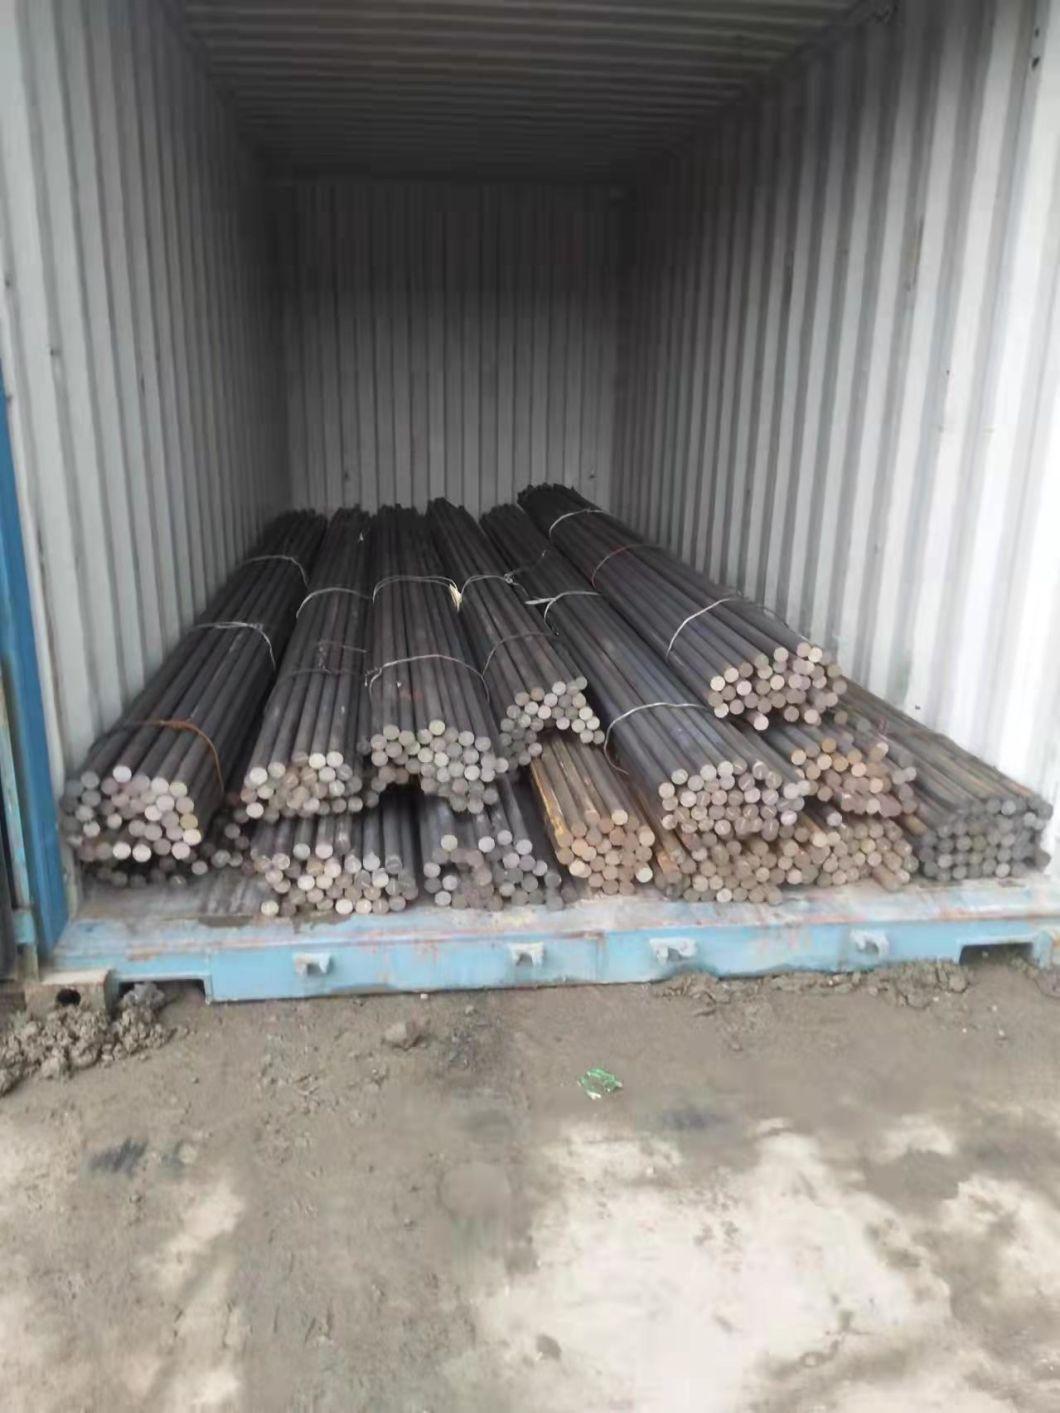 ASTM A36 C45 S20c 1045 S45c 1020 25mm 32mm 38mm Carbon Steel Round Bar Price